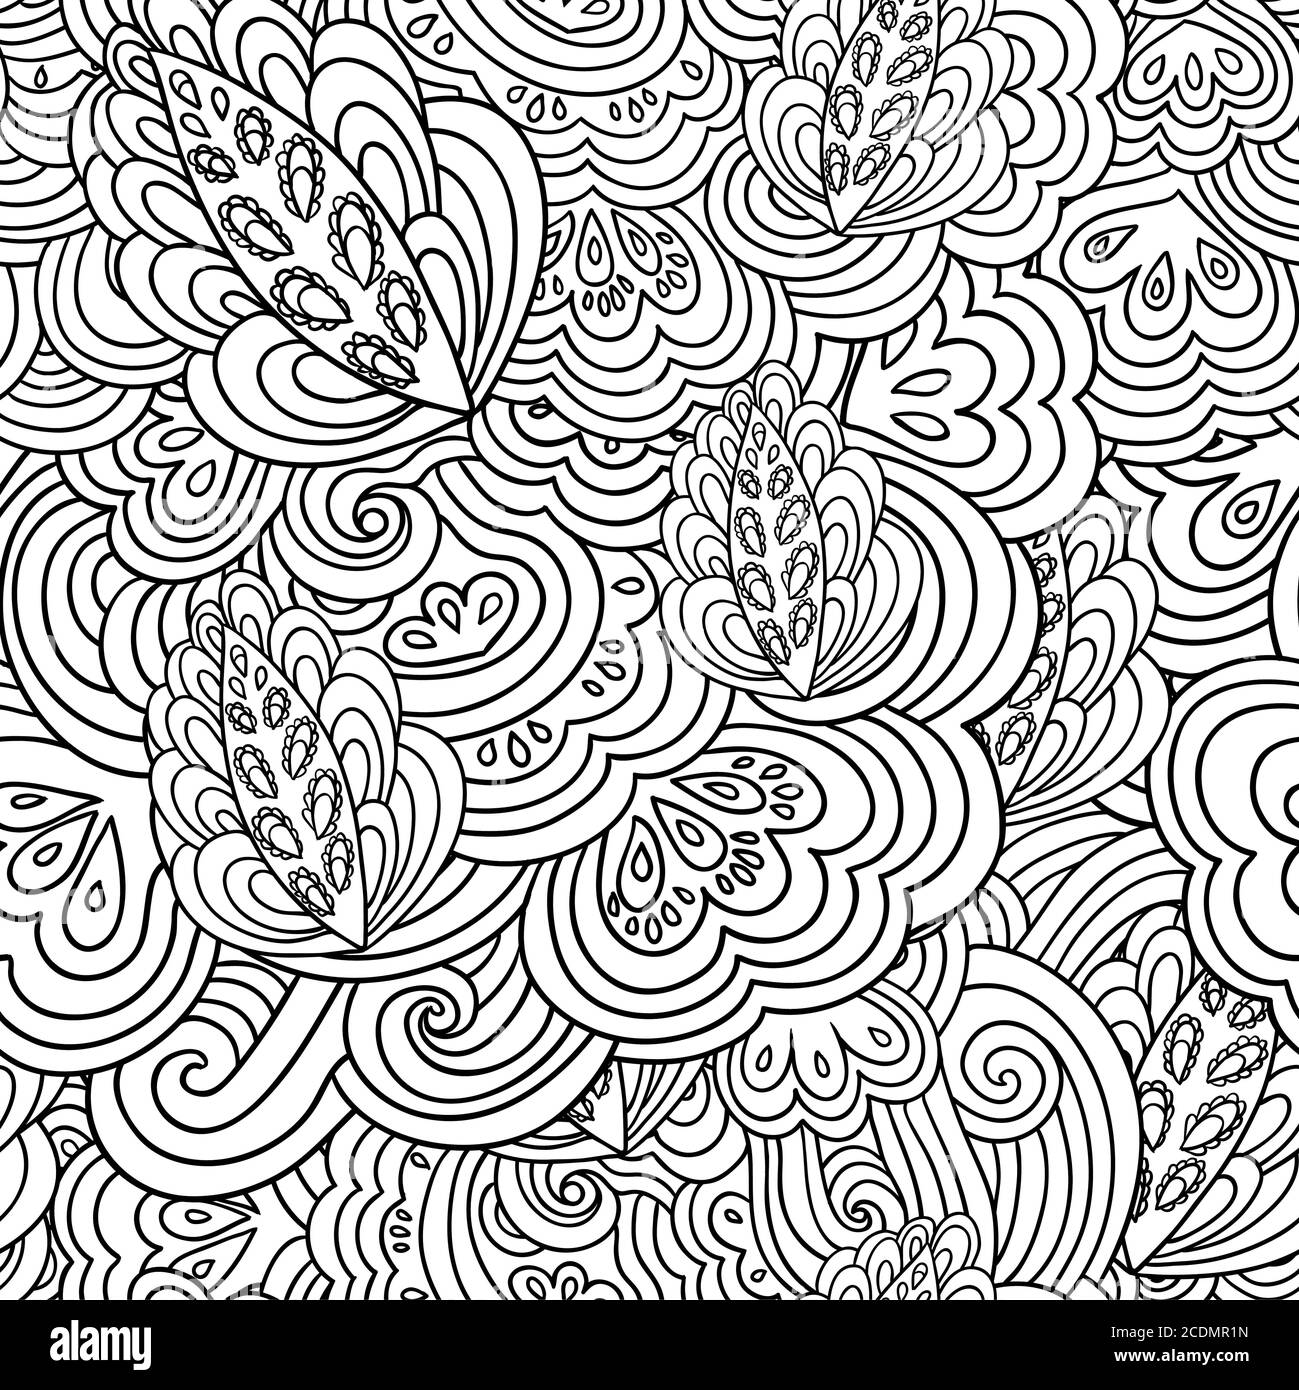 Nahtloses psychedelisches Muster mit verrückten schwarz-weißen Zierelementen. Stock Vektor